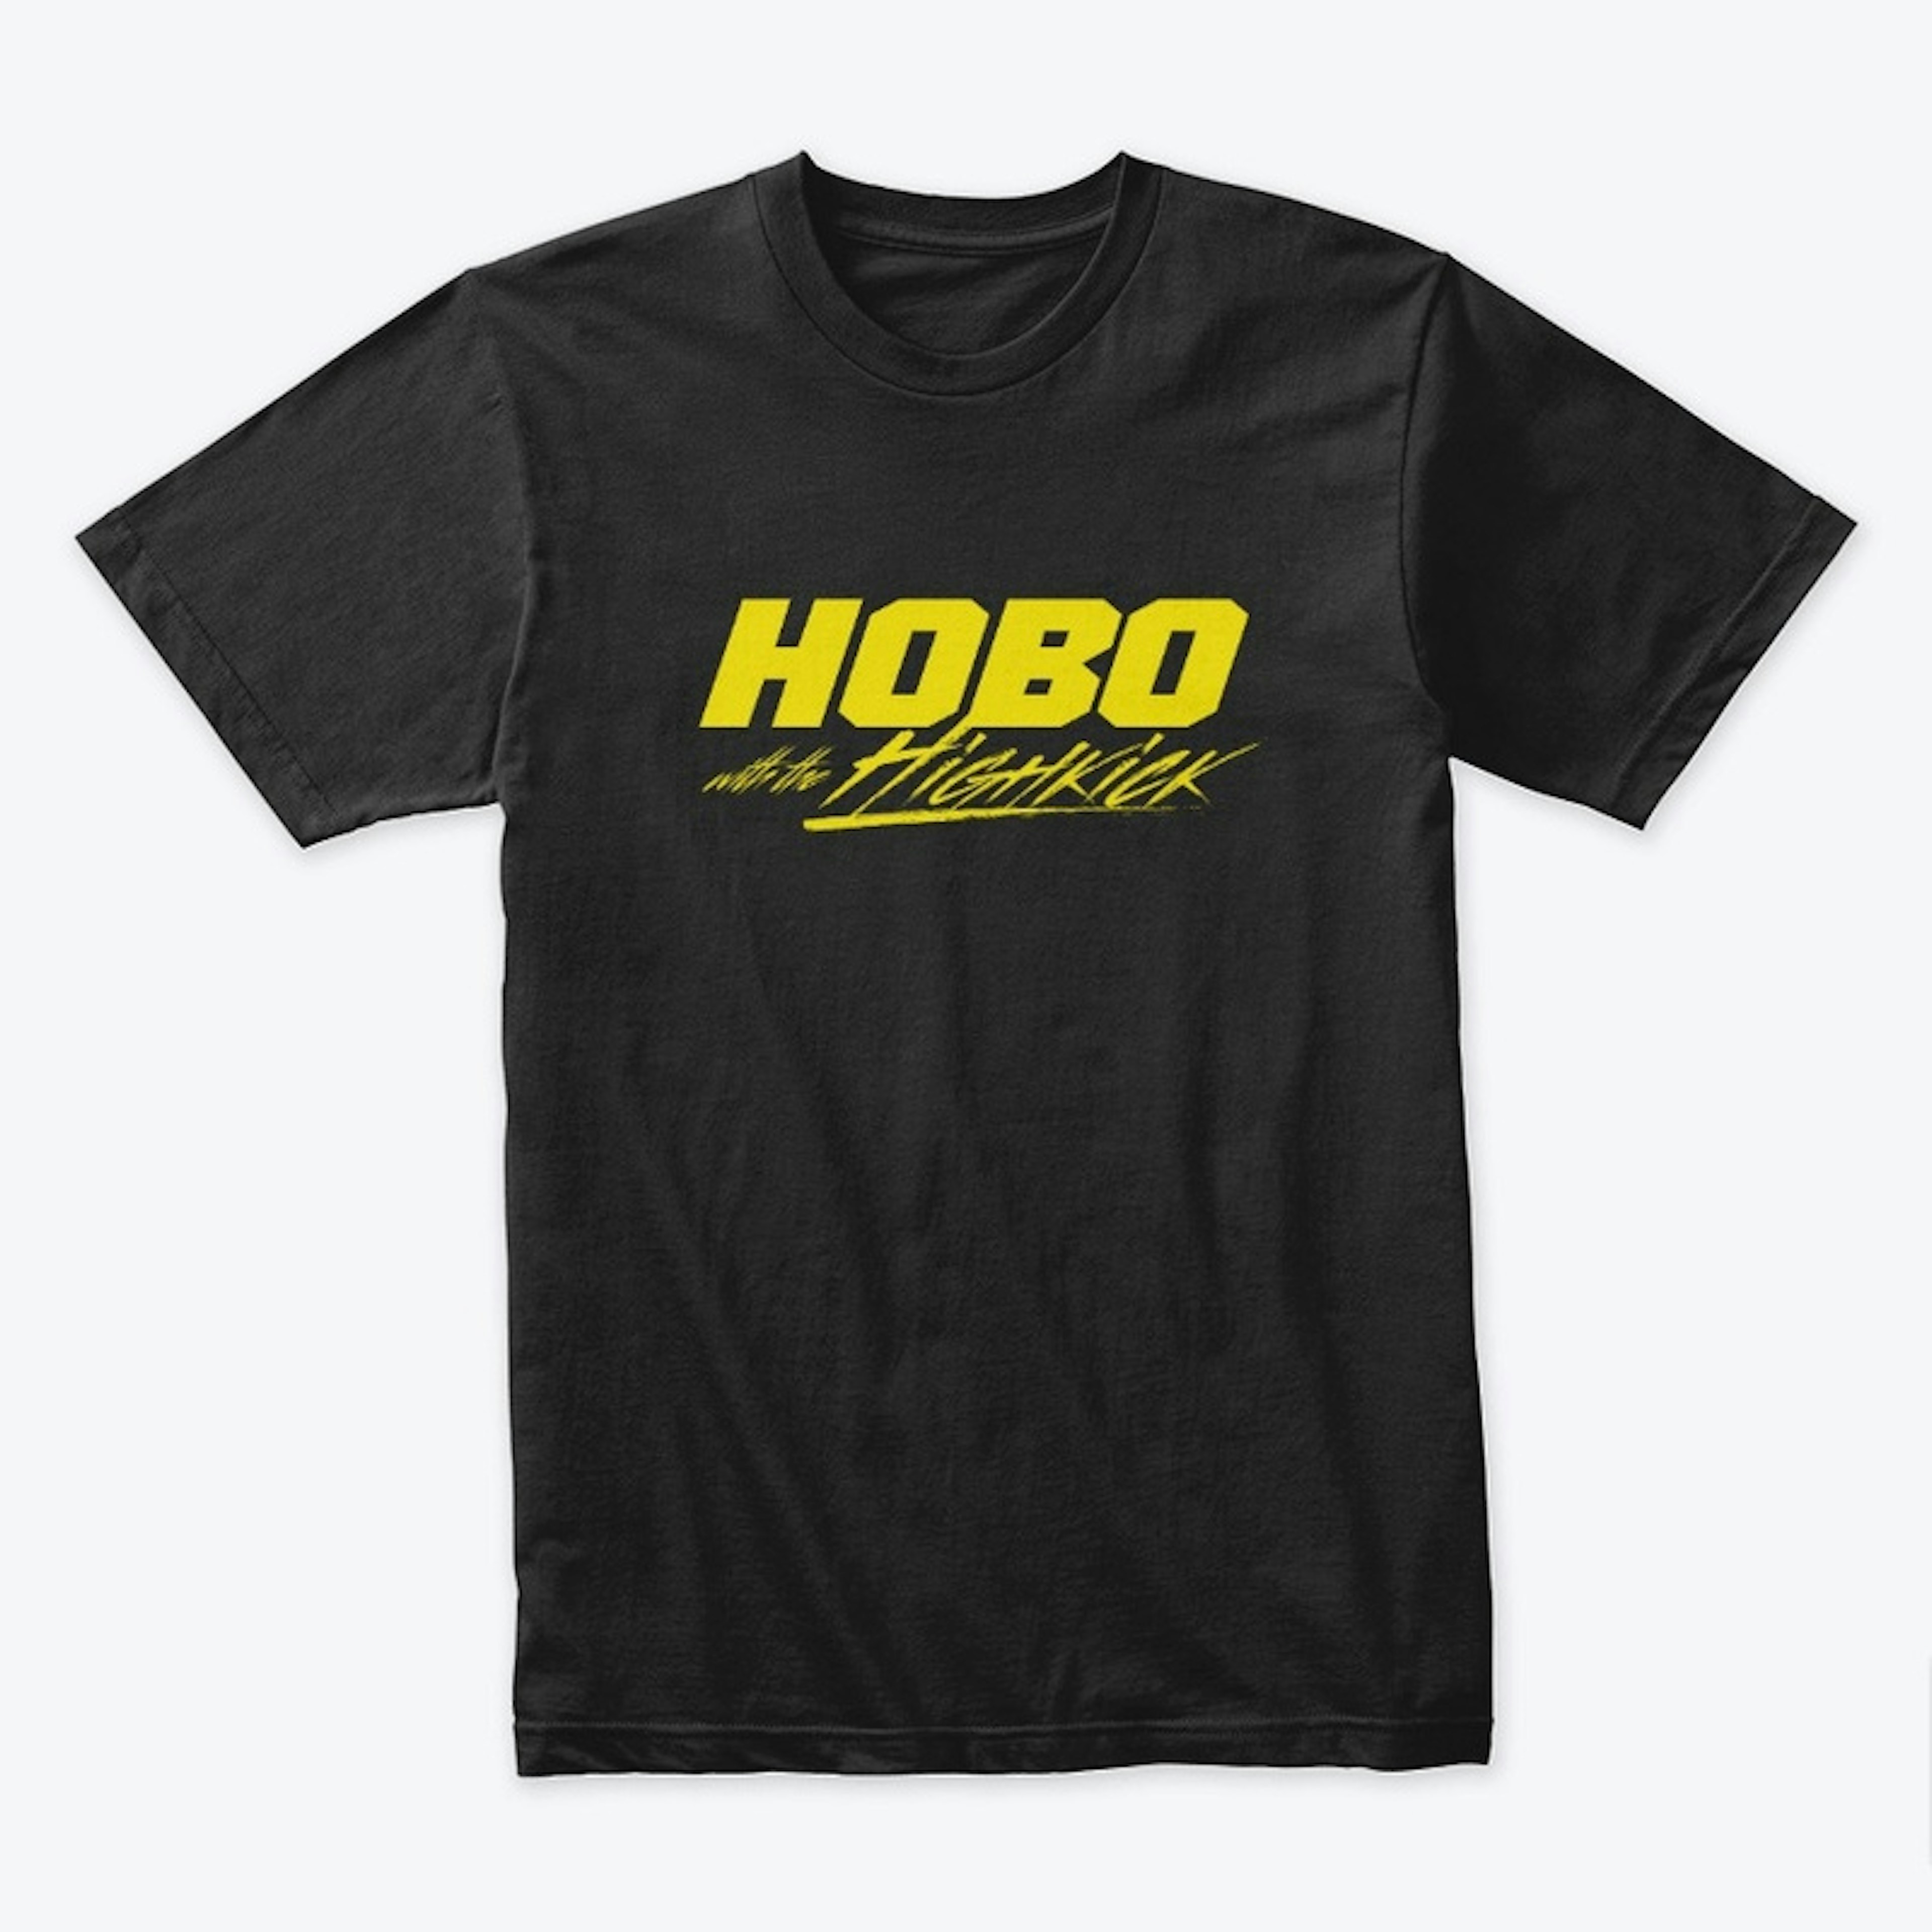 Hobo with the High Kick